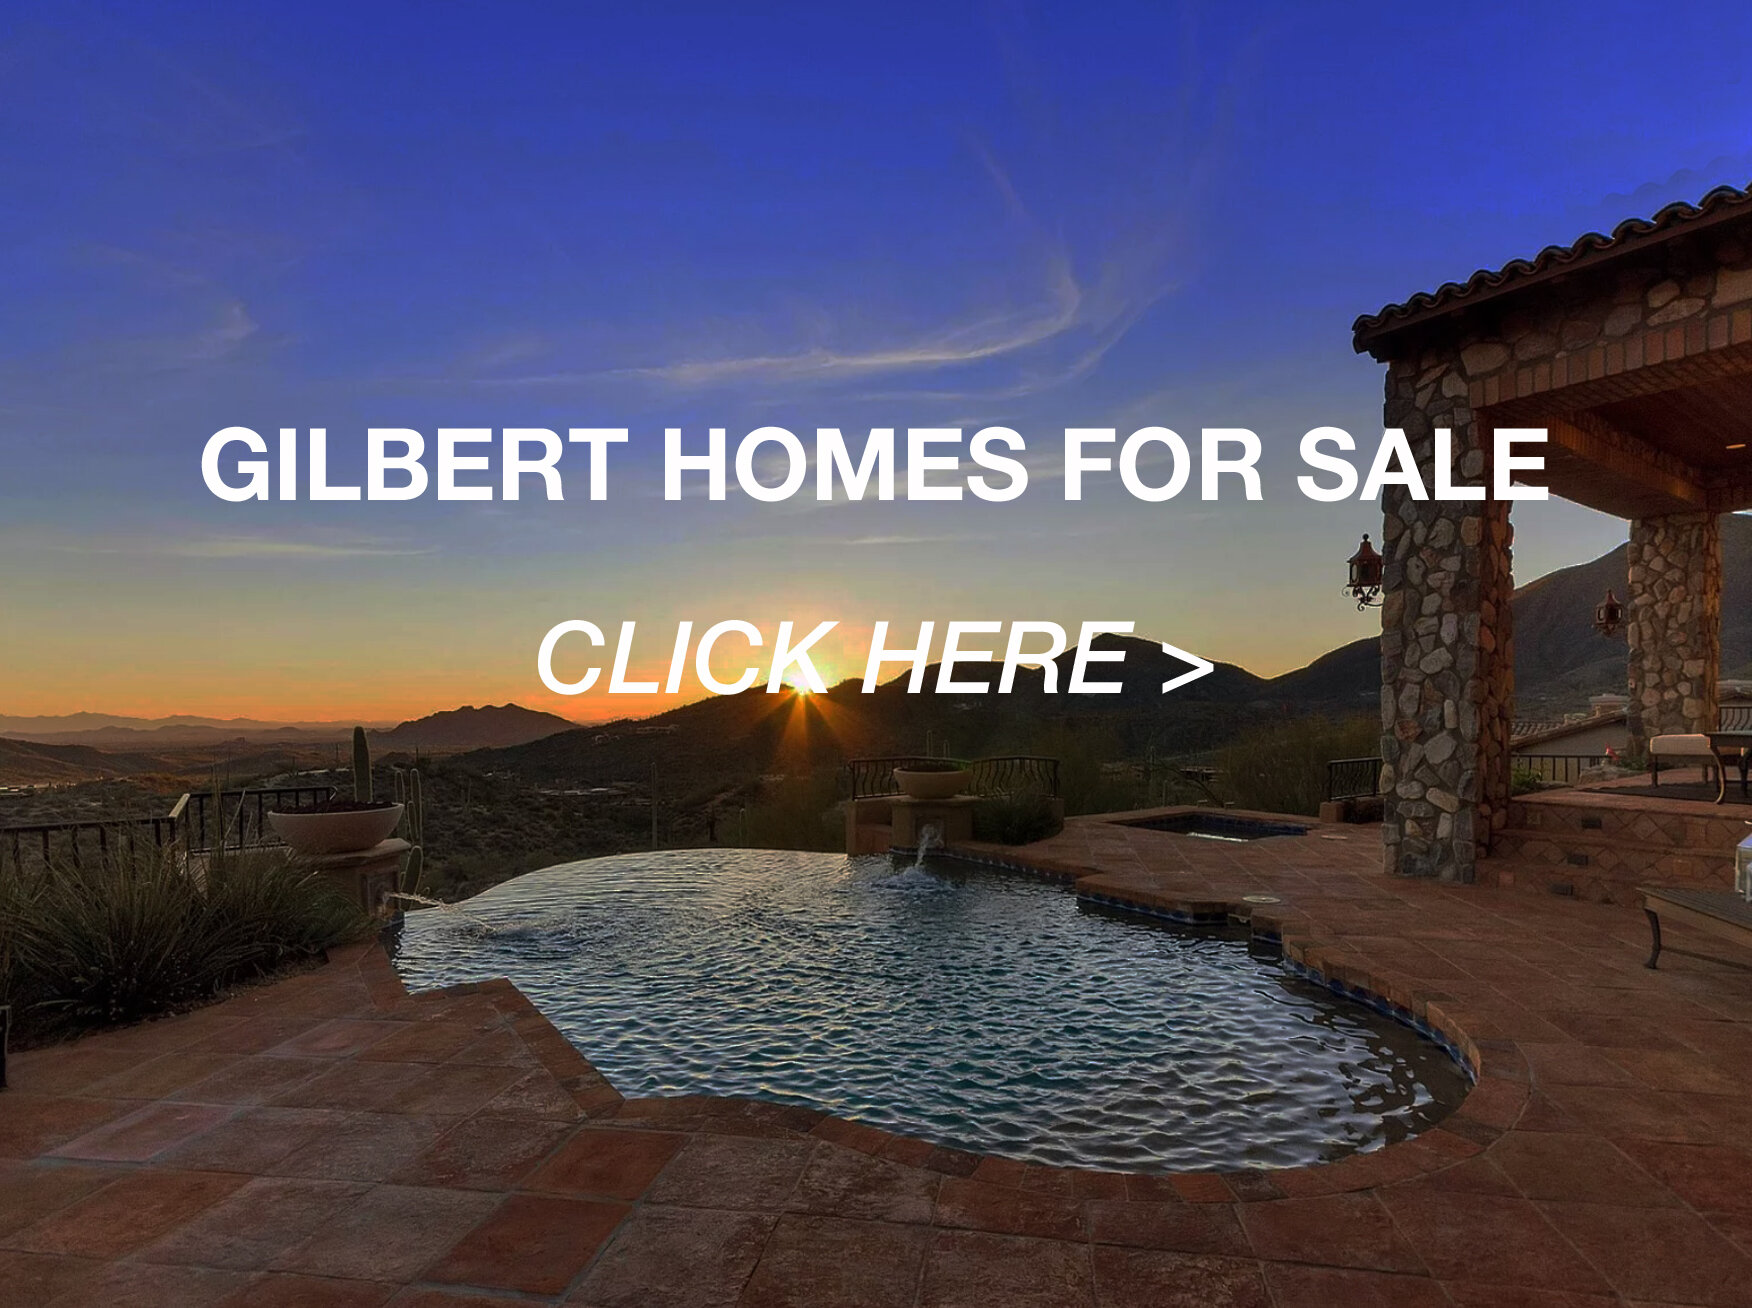  GILBERT HOMES FOR SALE 